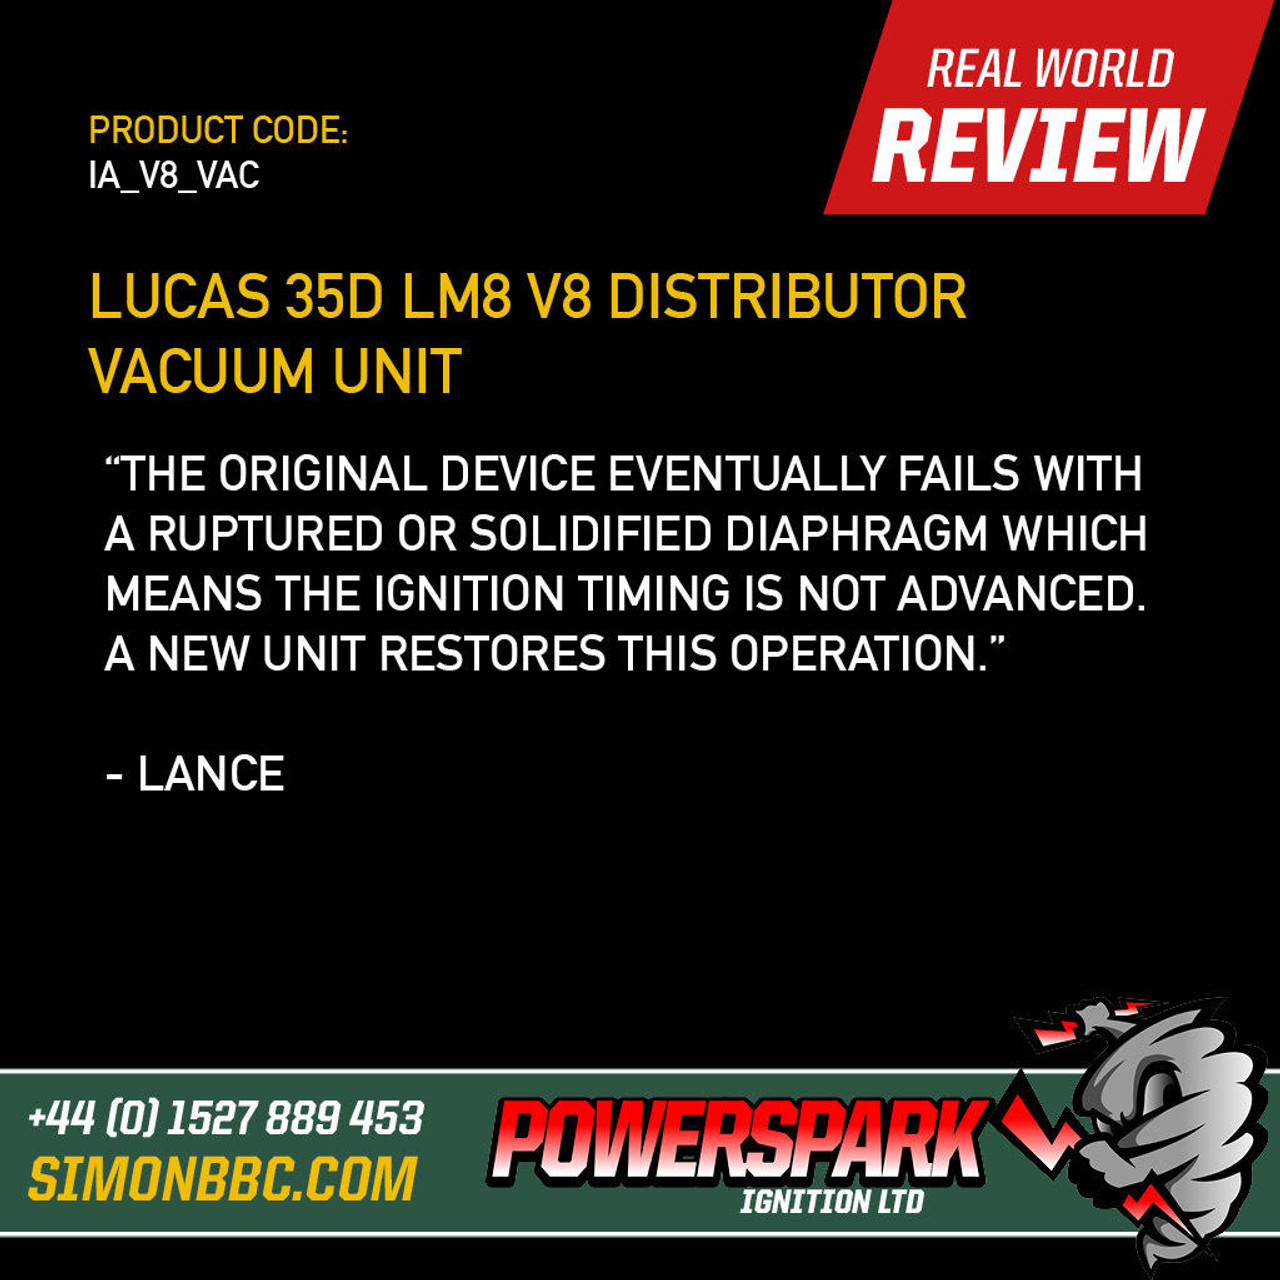 Lucas Lucas 35D LM8 V8 Distributor Vacuum Unit